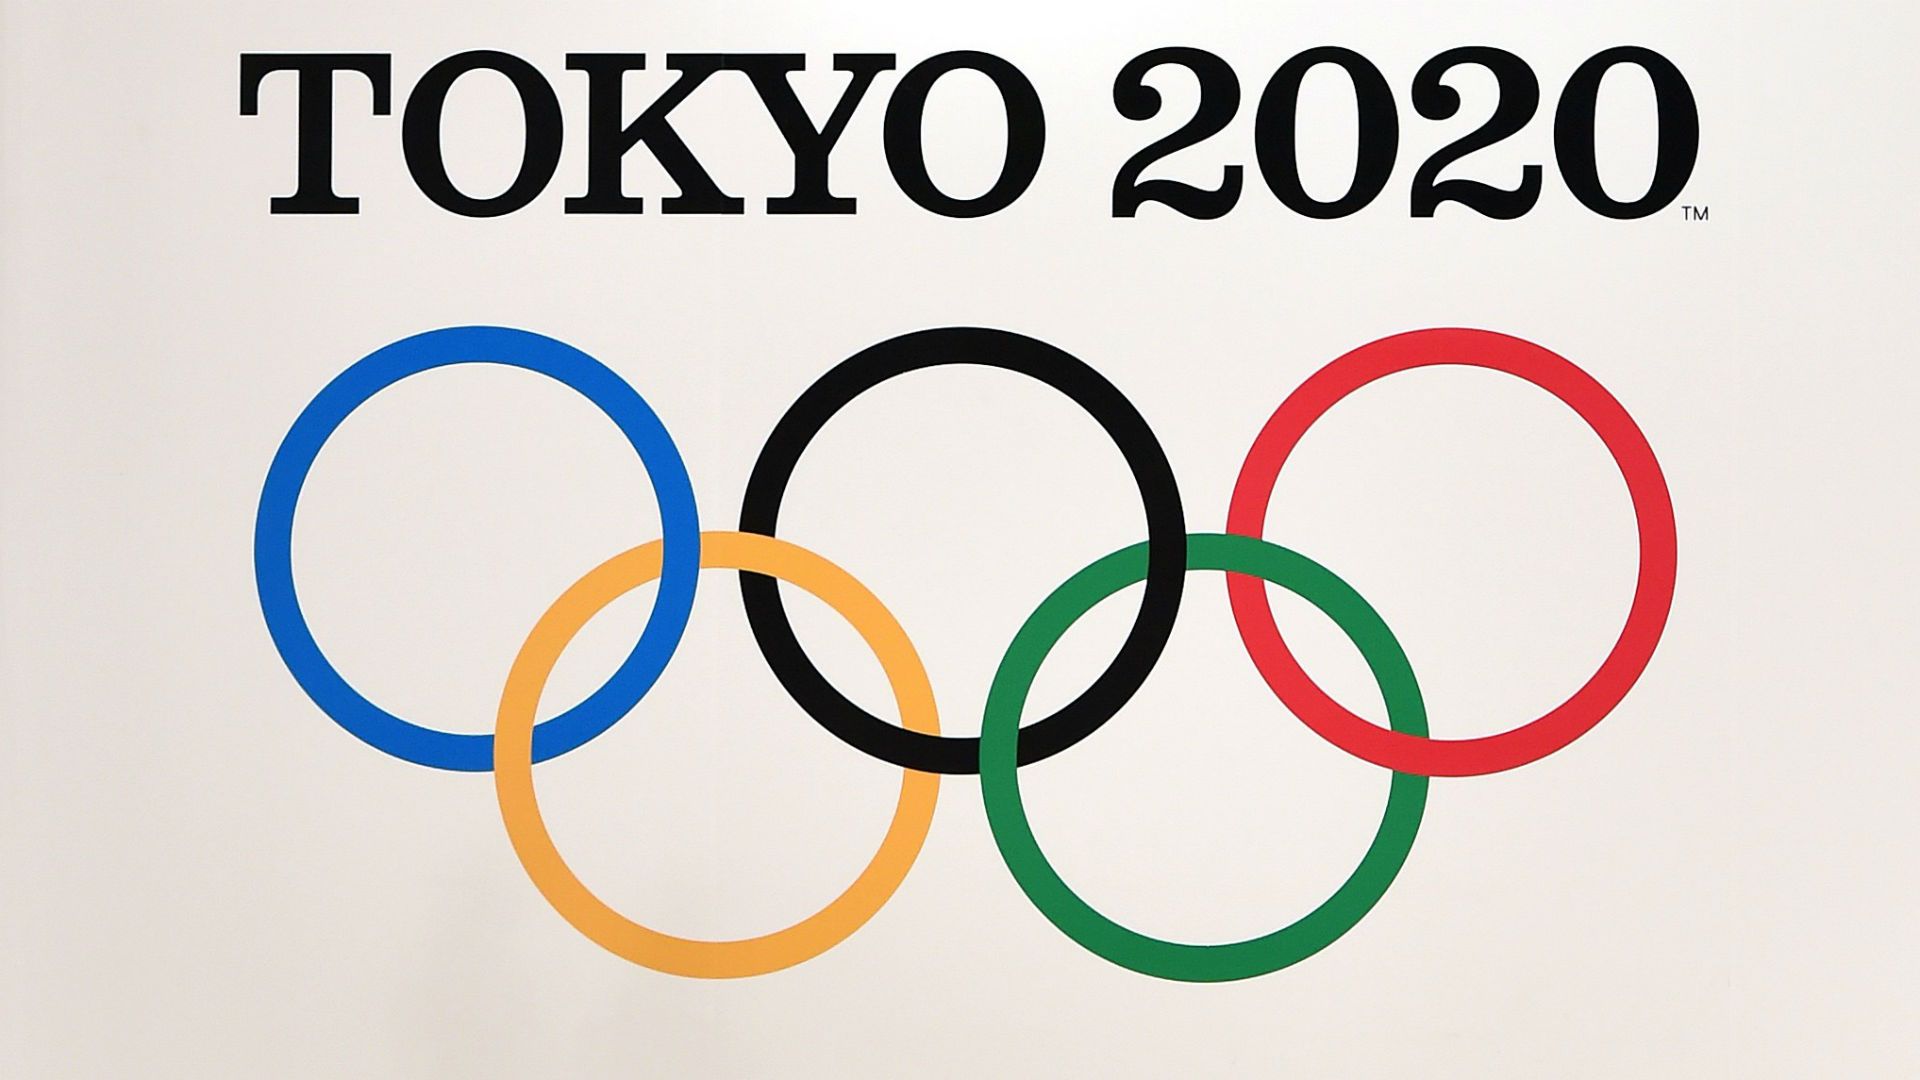 Le medaglie delle Olimpiadi di Tokyo 2020 saranno riciclate